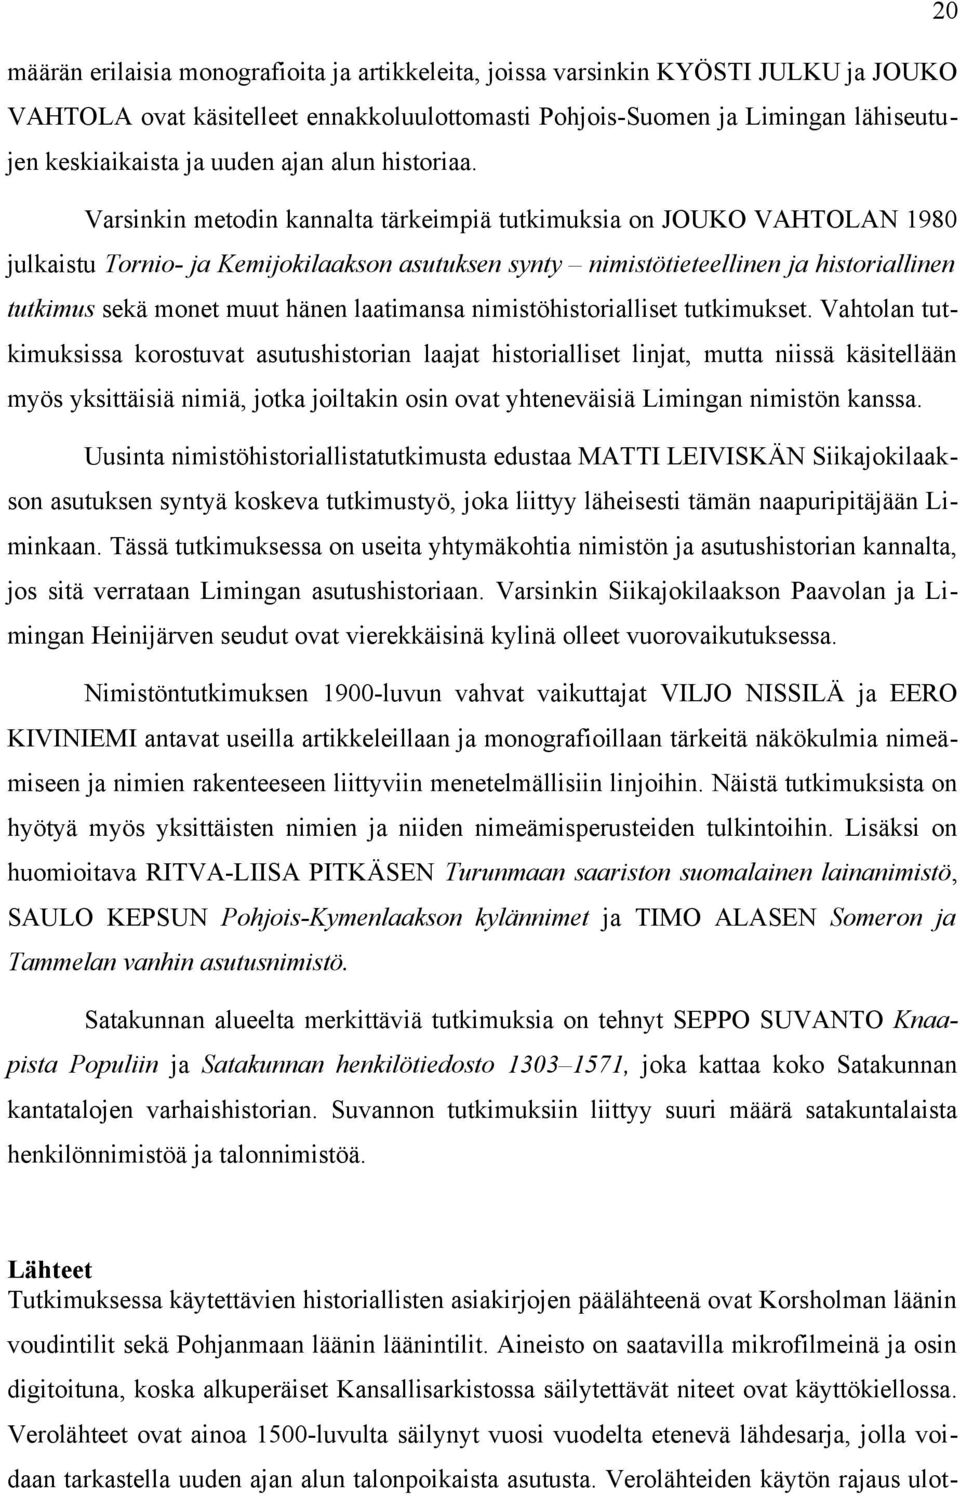 Varsinkin metodin kannalta tärkeimpiä tutkimuksia on JOUKO VAHTOLAN 1980 julkaistu Tornio- ja Kemijokilaakson asutuksen synty nimistötieteellinen ja historiallinen tutkimus sekä monet muut hänen